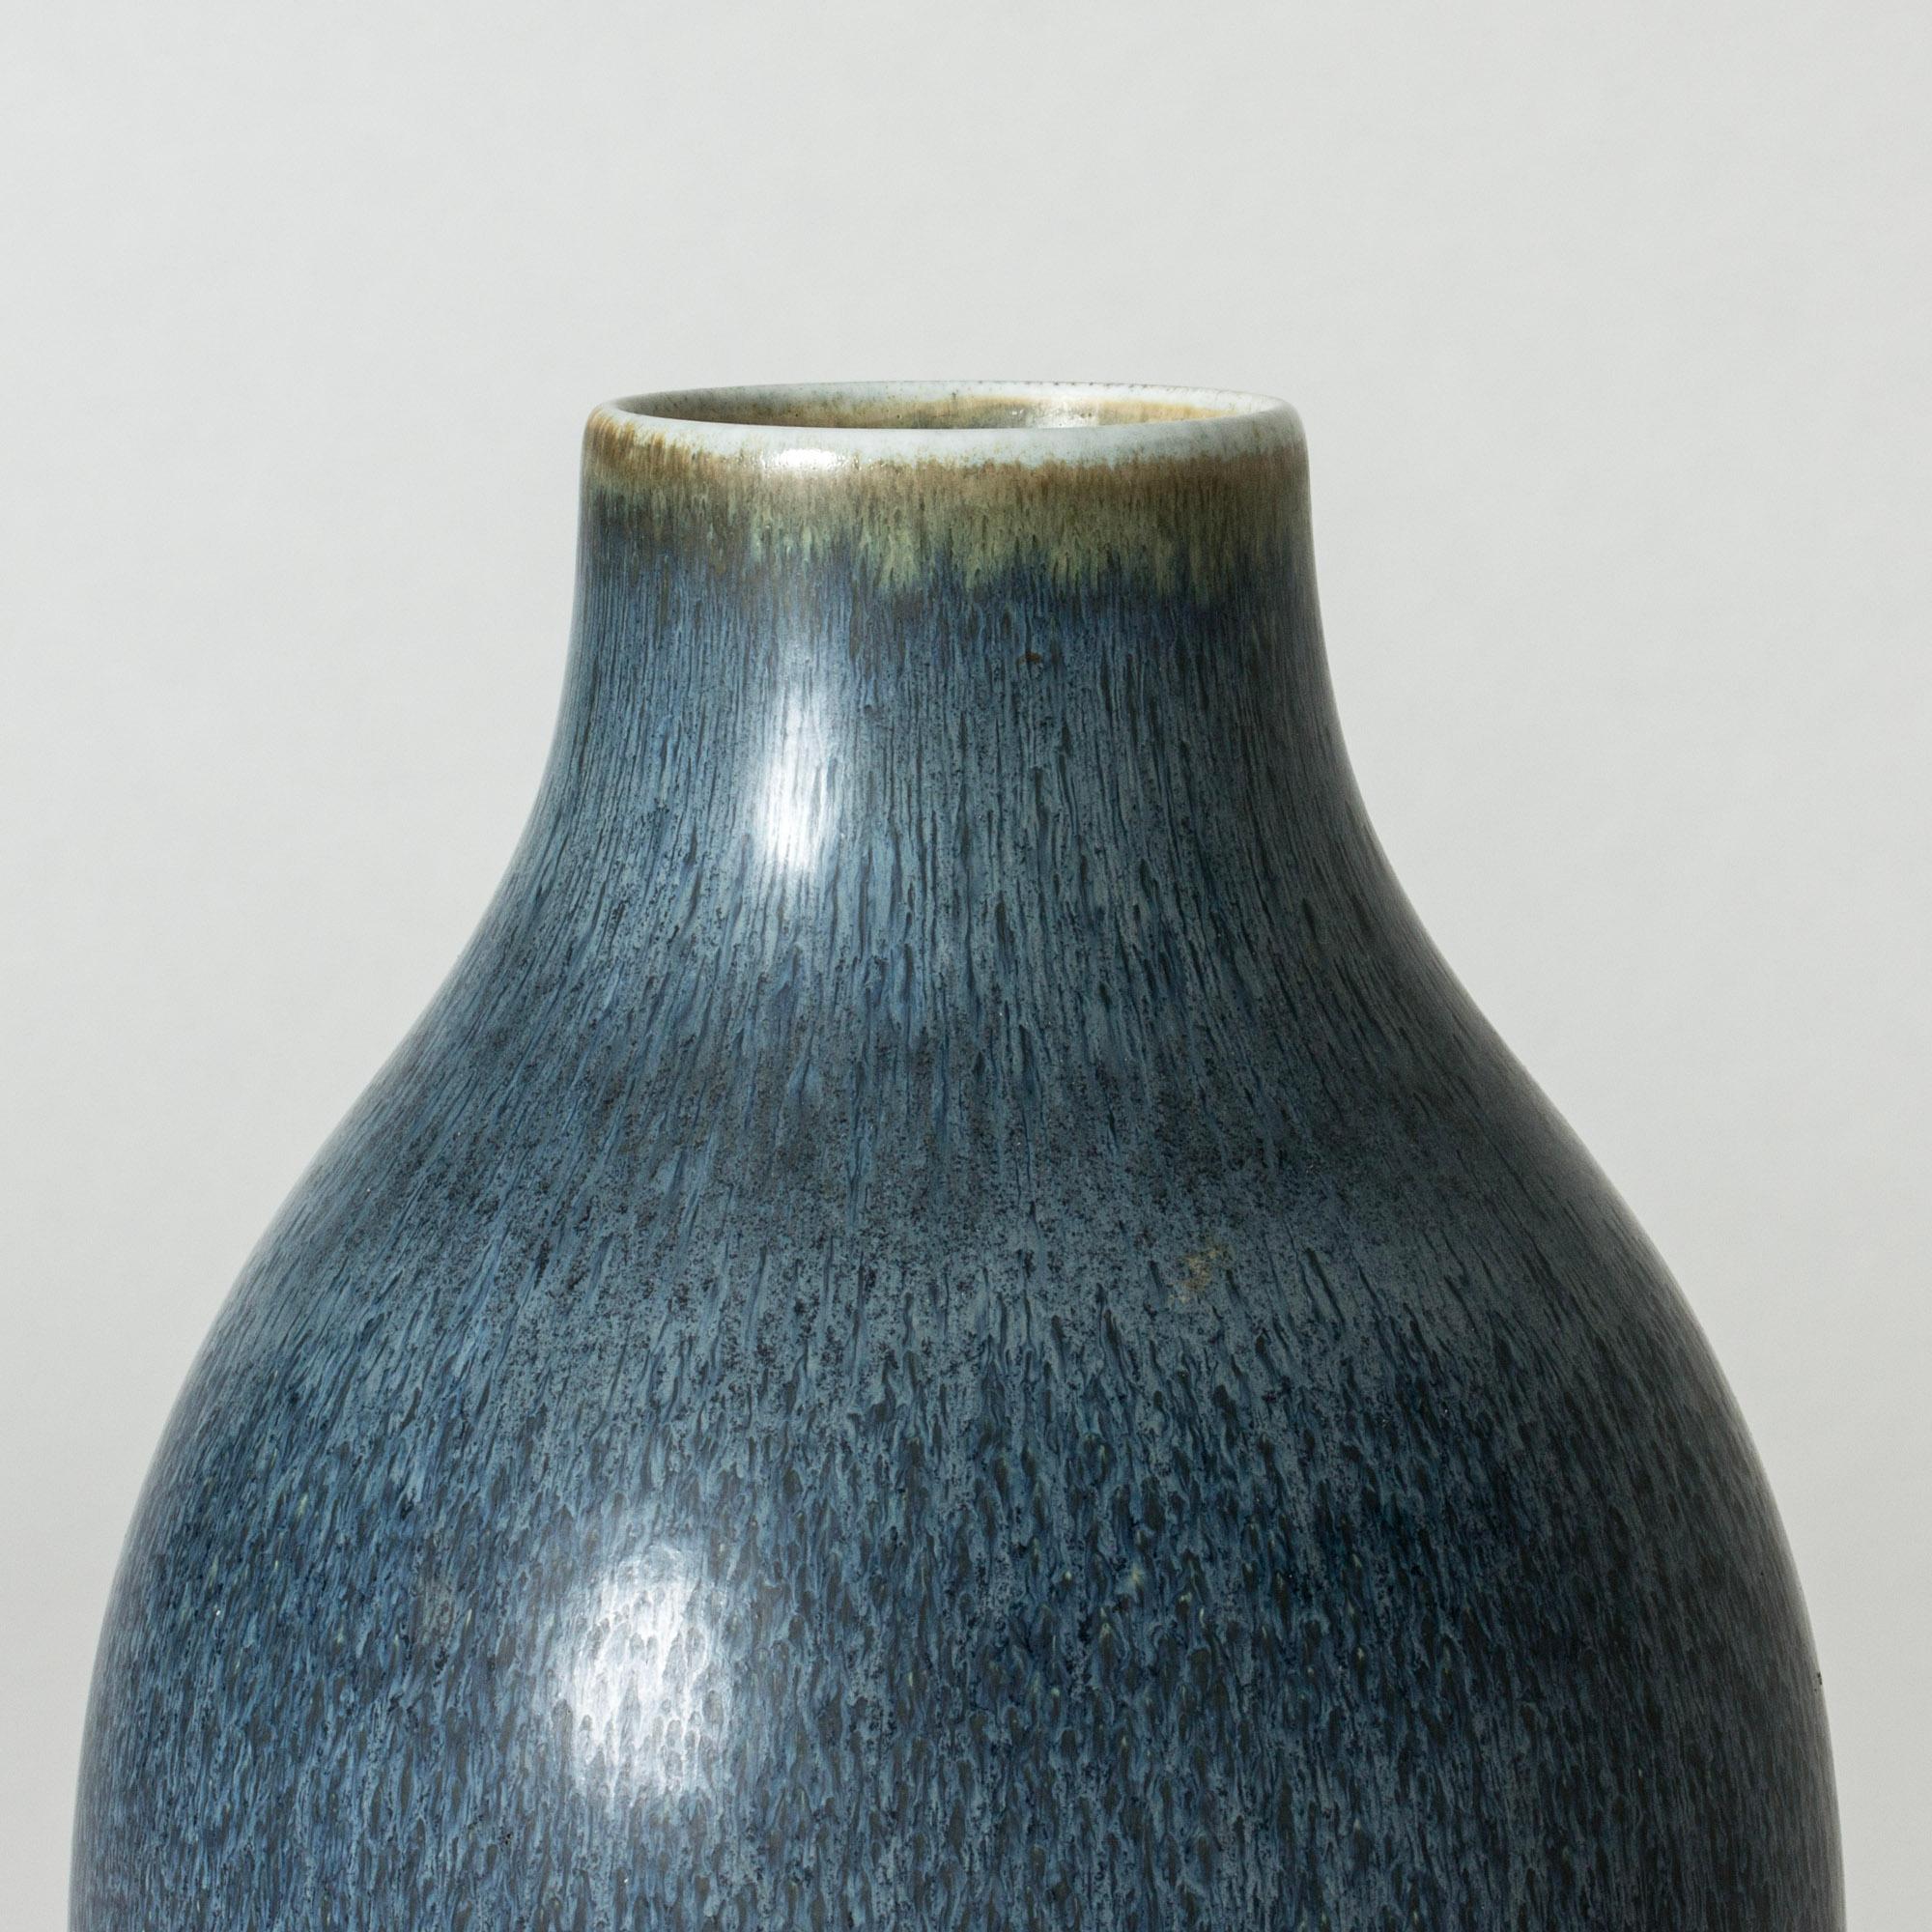 Statuesque vase de sol en grès de Carl-Harry Stålhane, à la forme épurée et à la belle glaçure bleue à l'aspect quelque peu granuleux.

Carl-Harry Stålhane était l'une des stars des artistes céramistes suédois des années 1950, 1960 et 1970, dont les